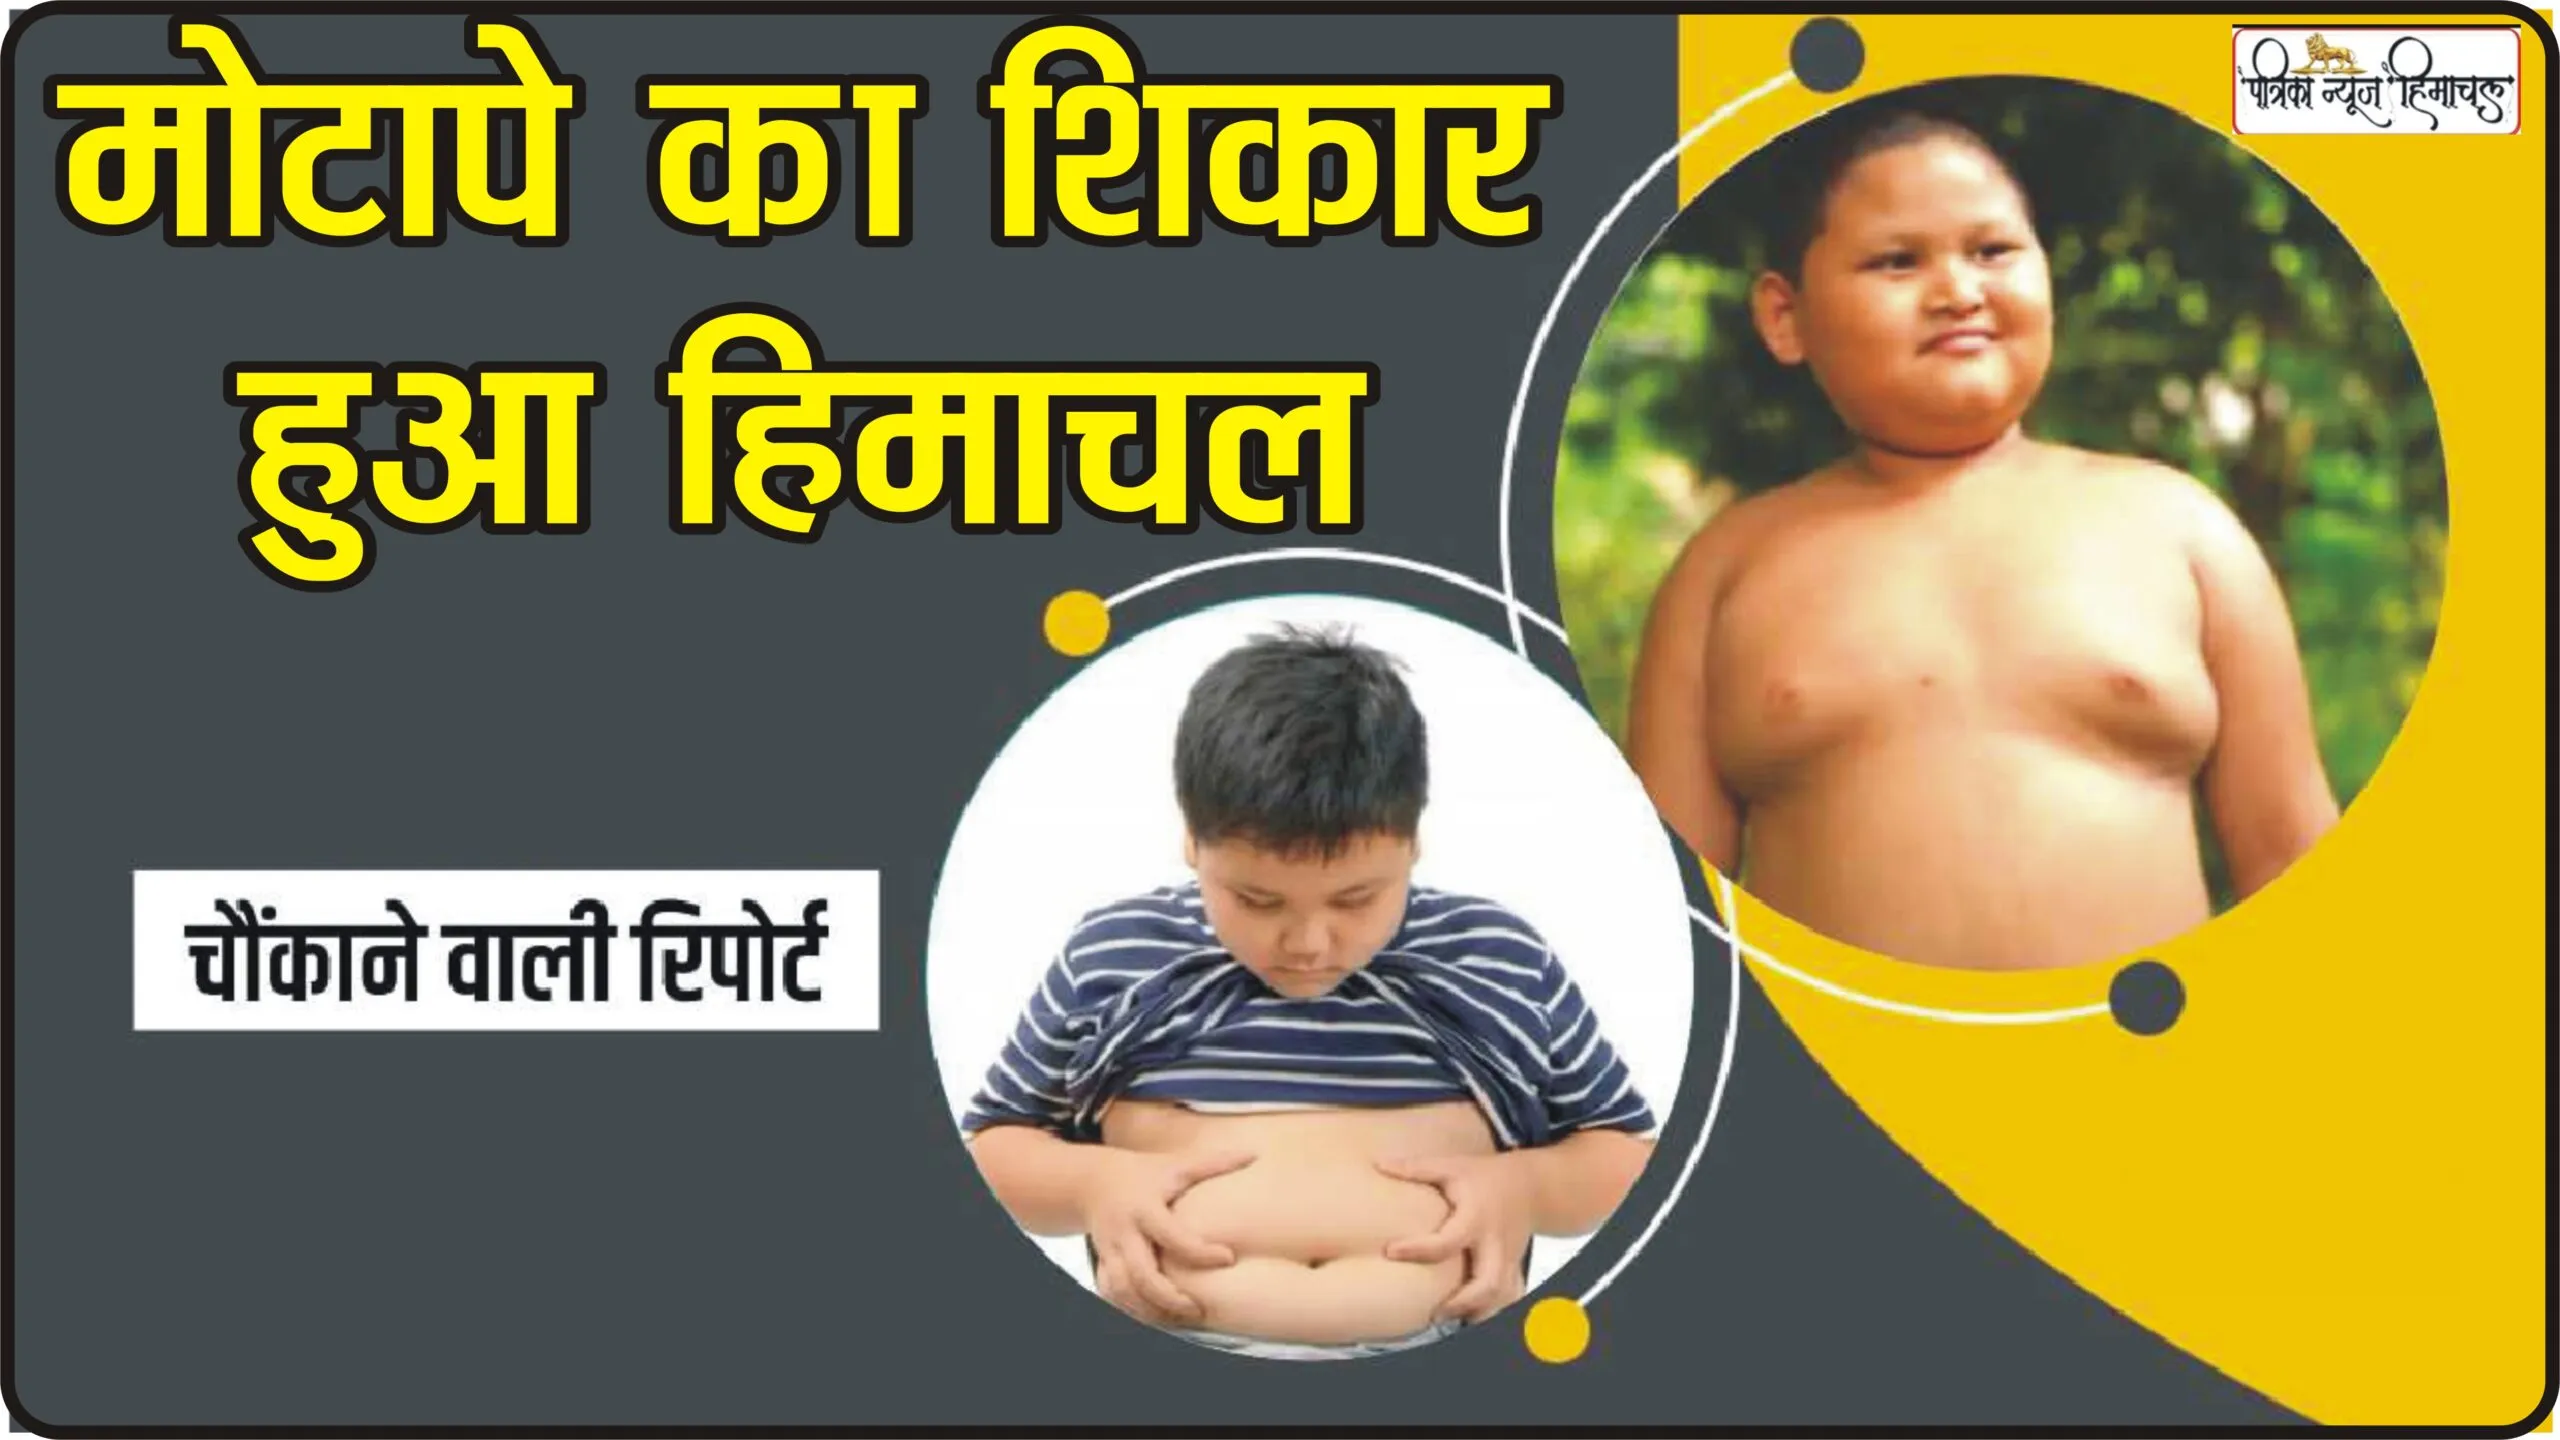 Himachal News || पहाड़ों में बच्चों पर मंडरा रहा मोटापे का खतरा, 56 फीसदी लोग मोटापे के शिकार, ICMR की रिपोर्ट में हुआ तगड़ा खुलासा